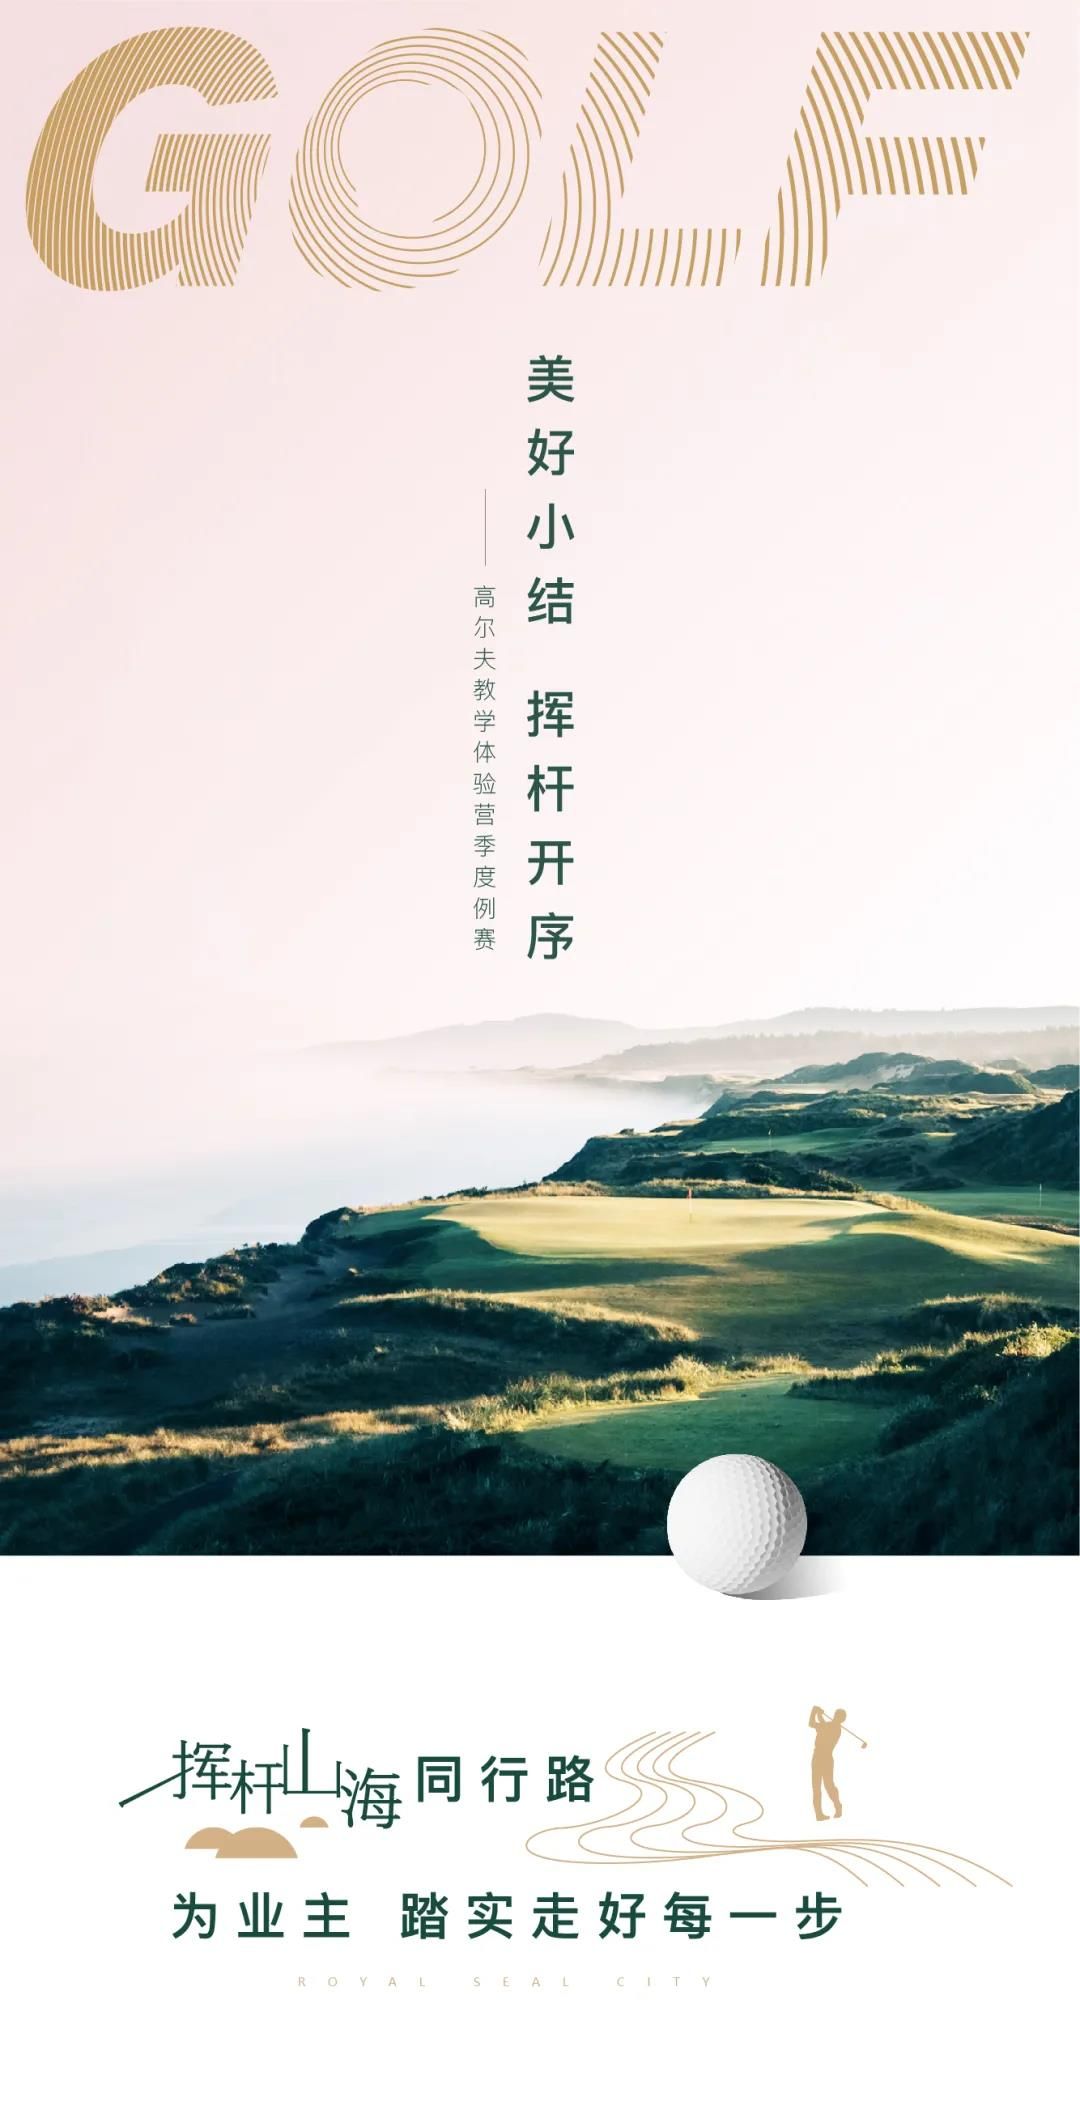 美好周末   挥杆继续——青岛银丰玖玺城高尔夫系列教学体验营活动为友邻活力开启